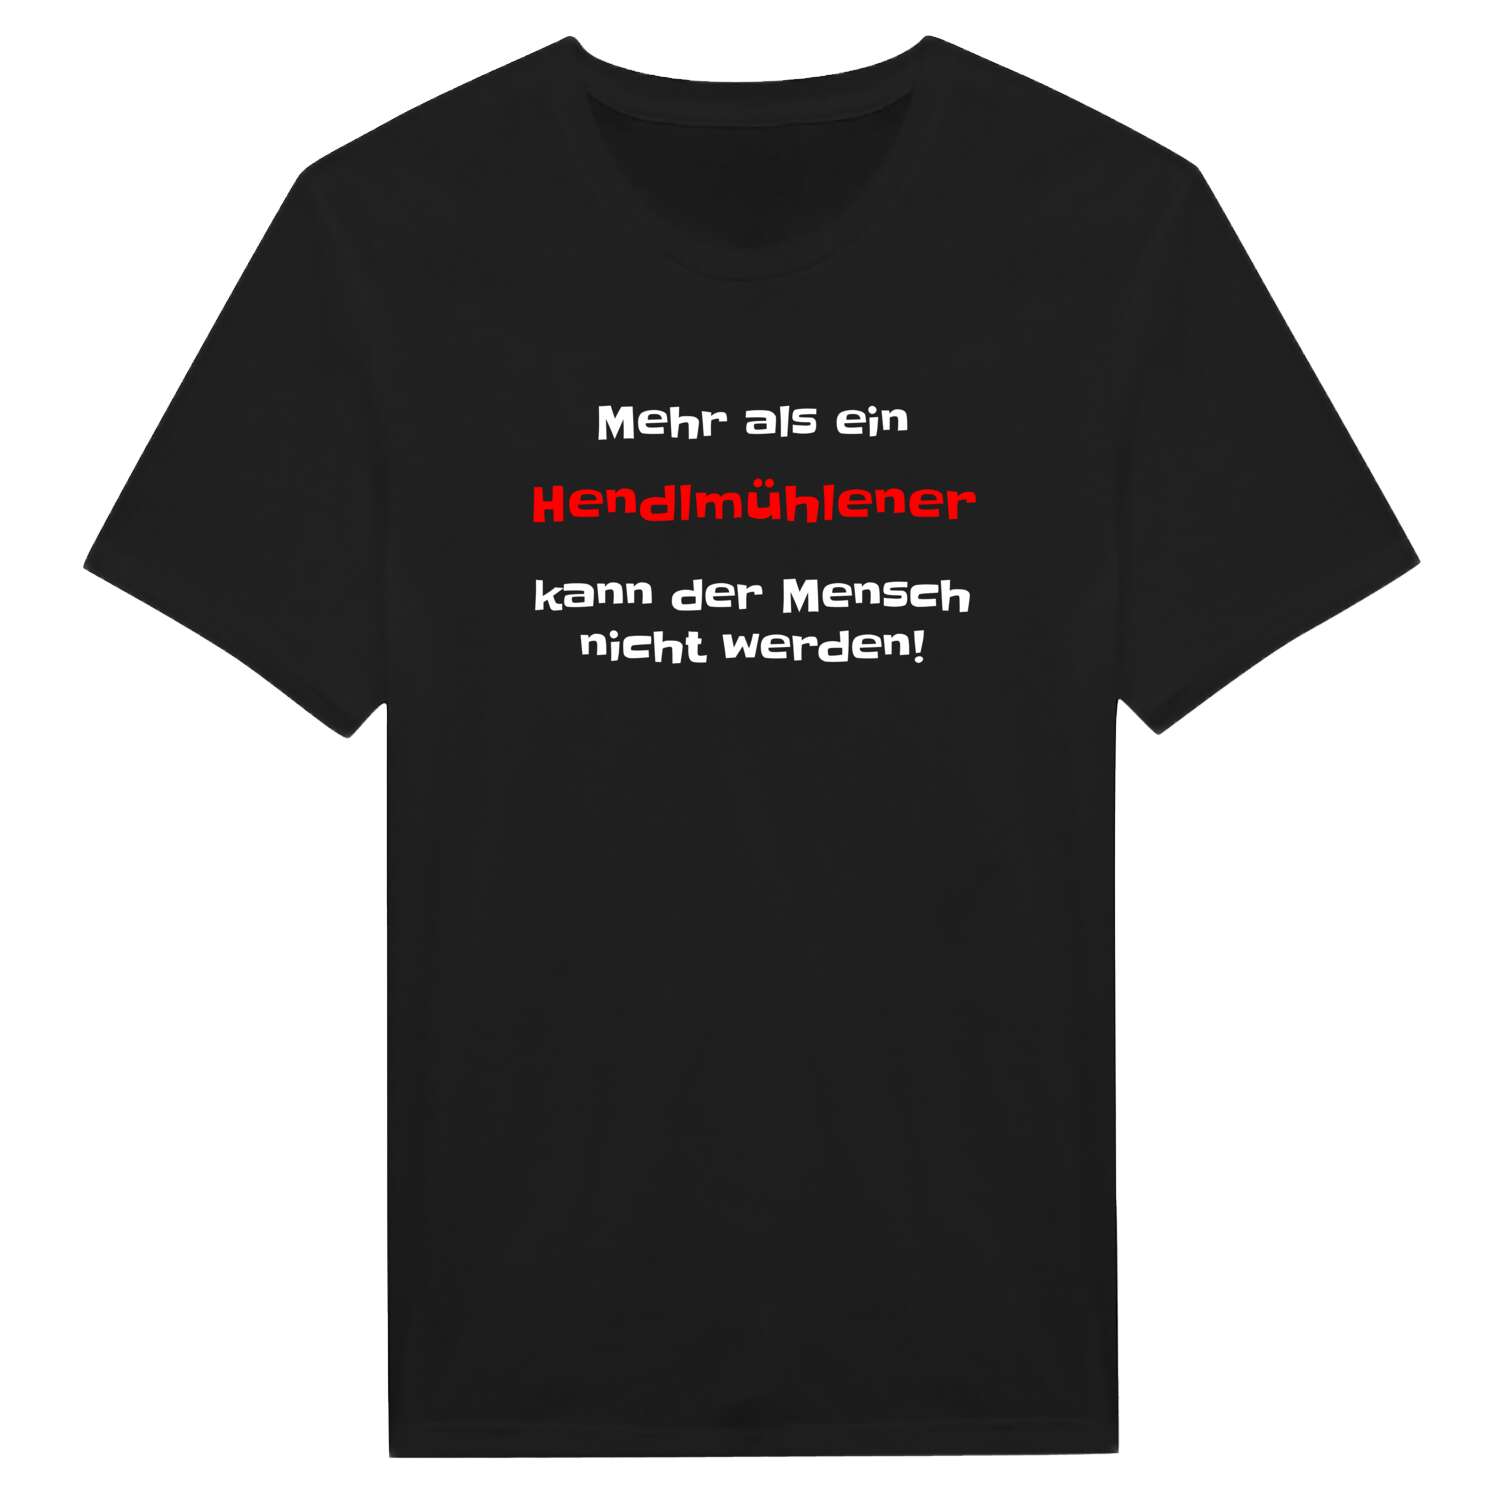 Hendlmühle T-Shirt »Mehr als ein«